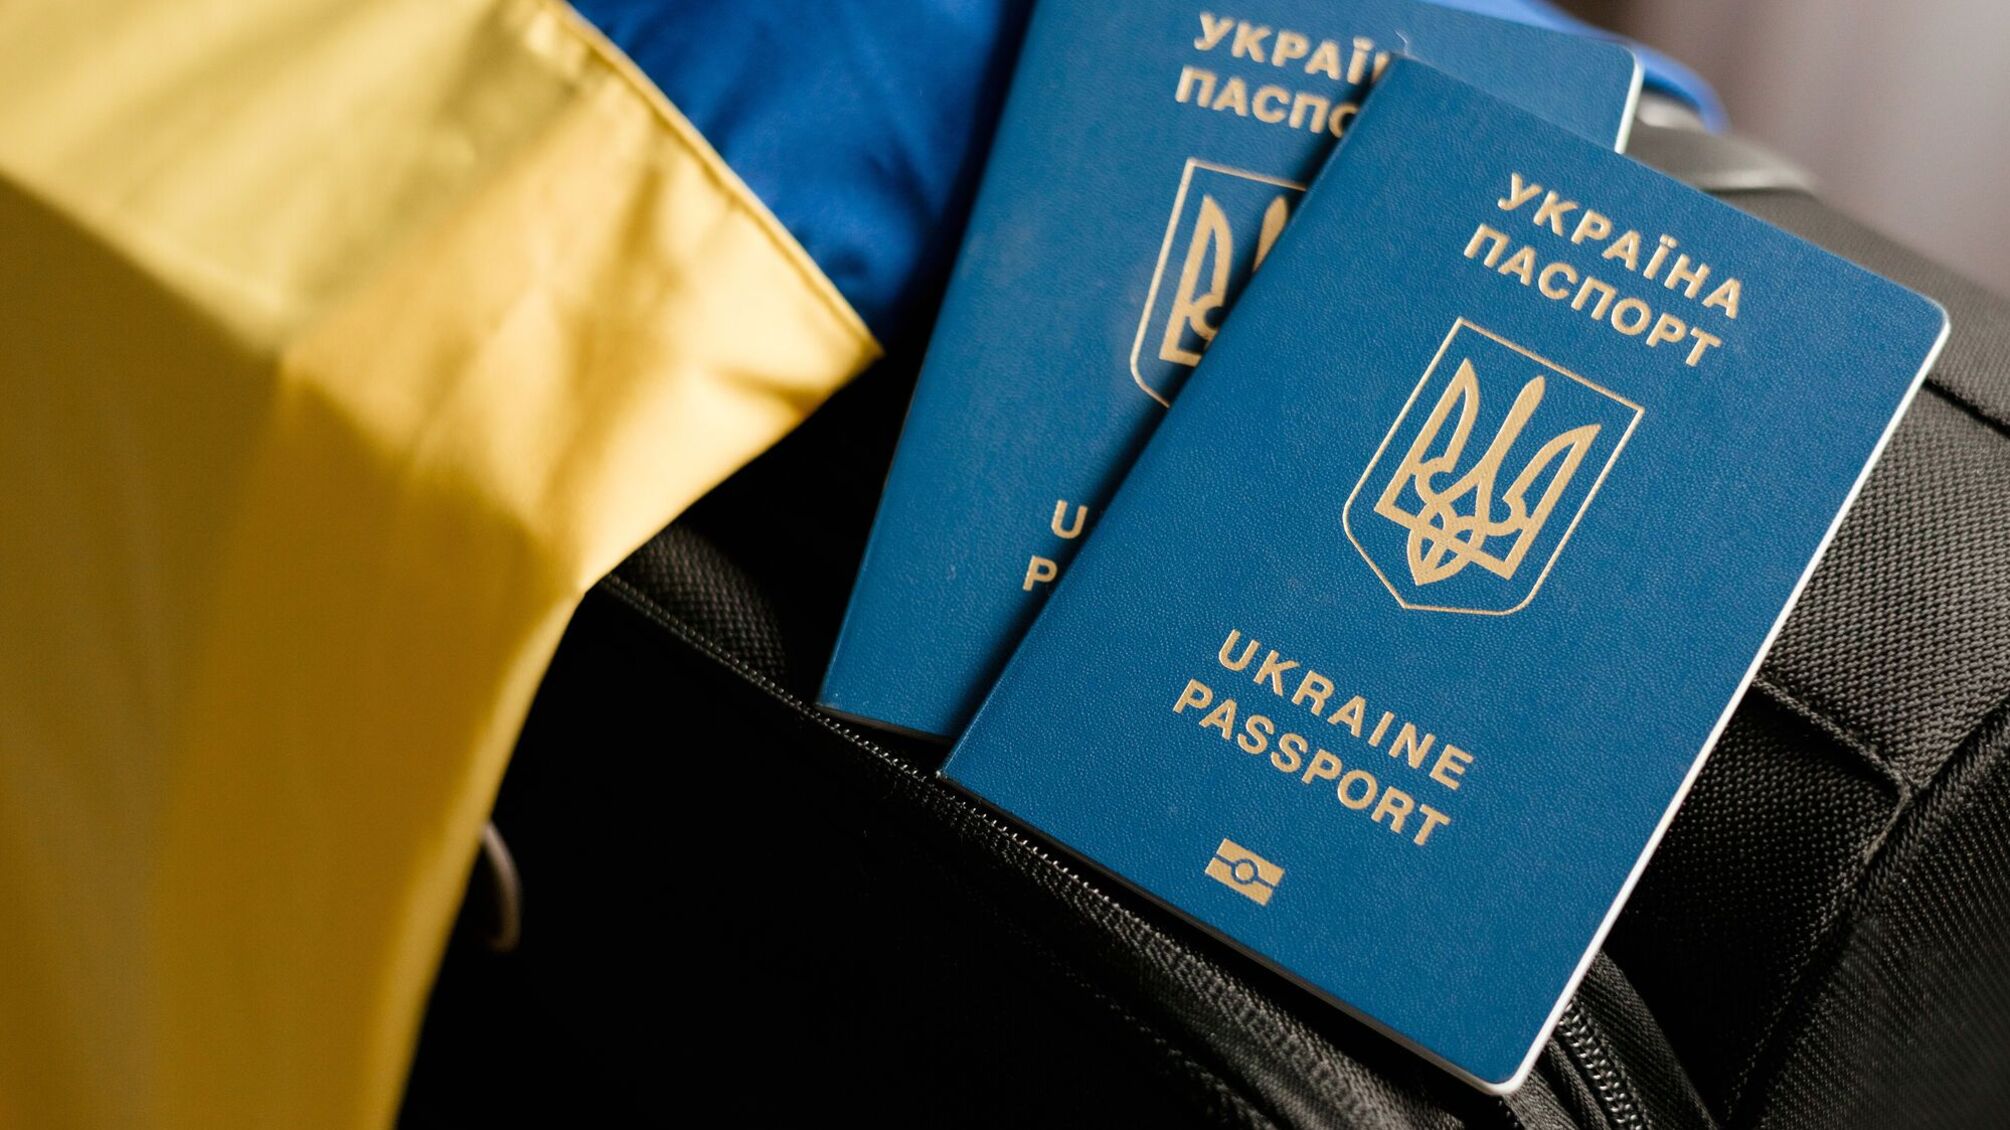 Мережею шириться новий 'вкид' про закордонні паспорти: журналіст Роман Бочкала спростував фейк